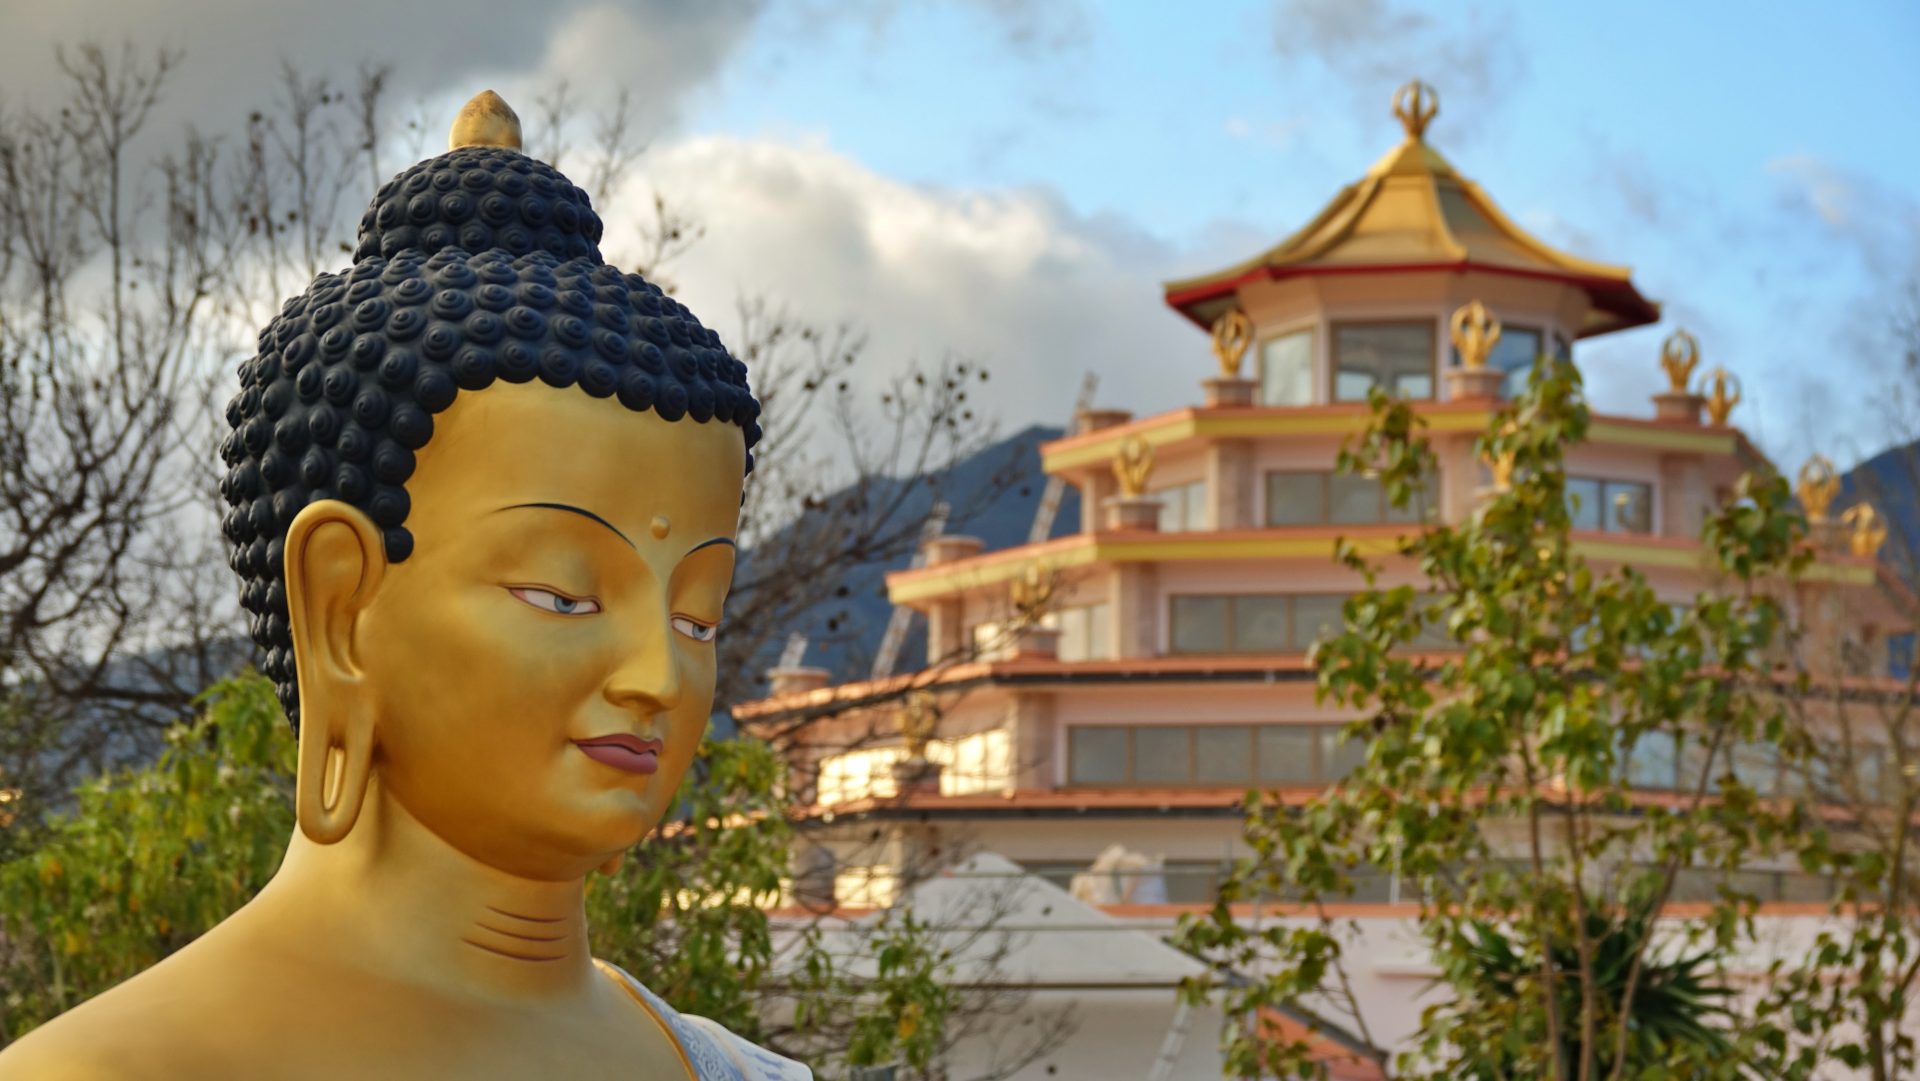 5star malaga kadampa temple Buddha Shakyamuni statue clouds mountains trees daytime outdoors ginaw